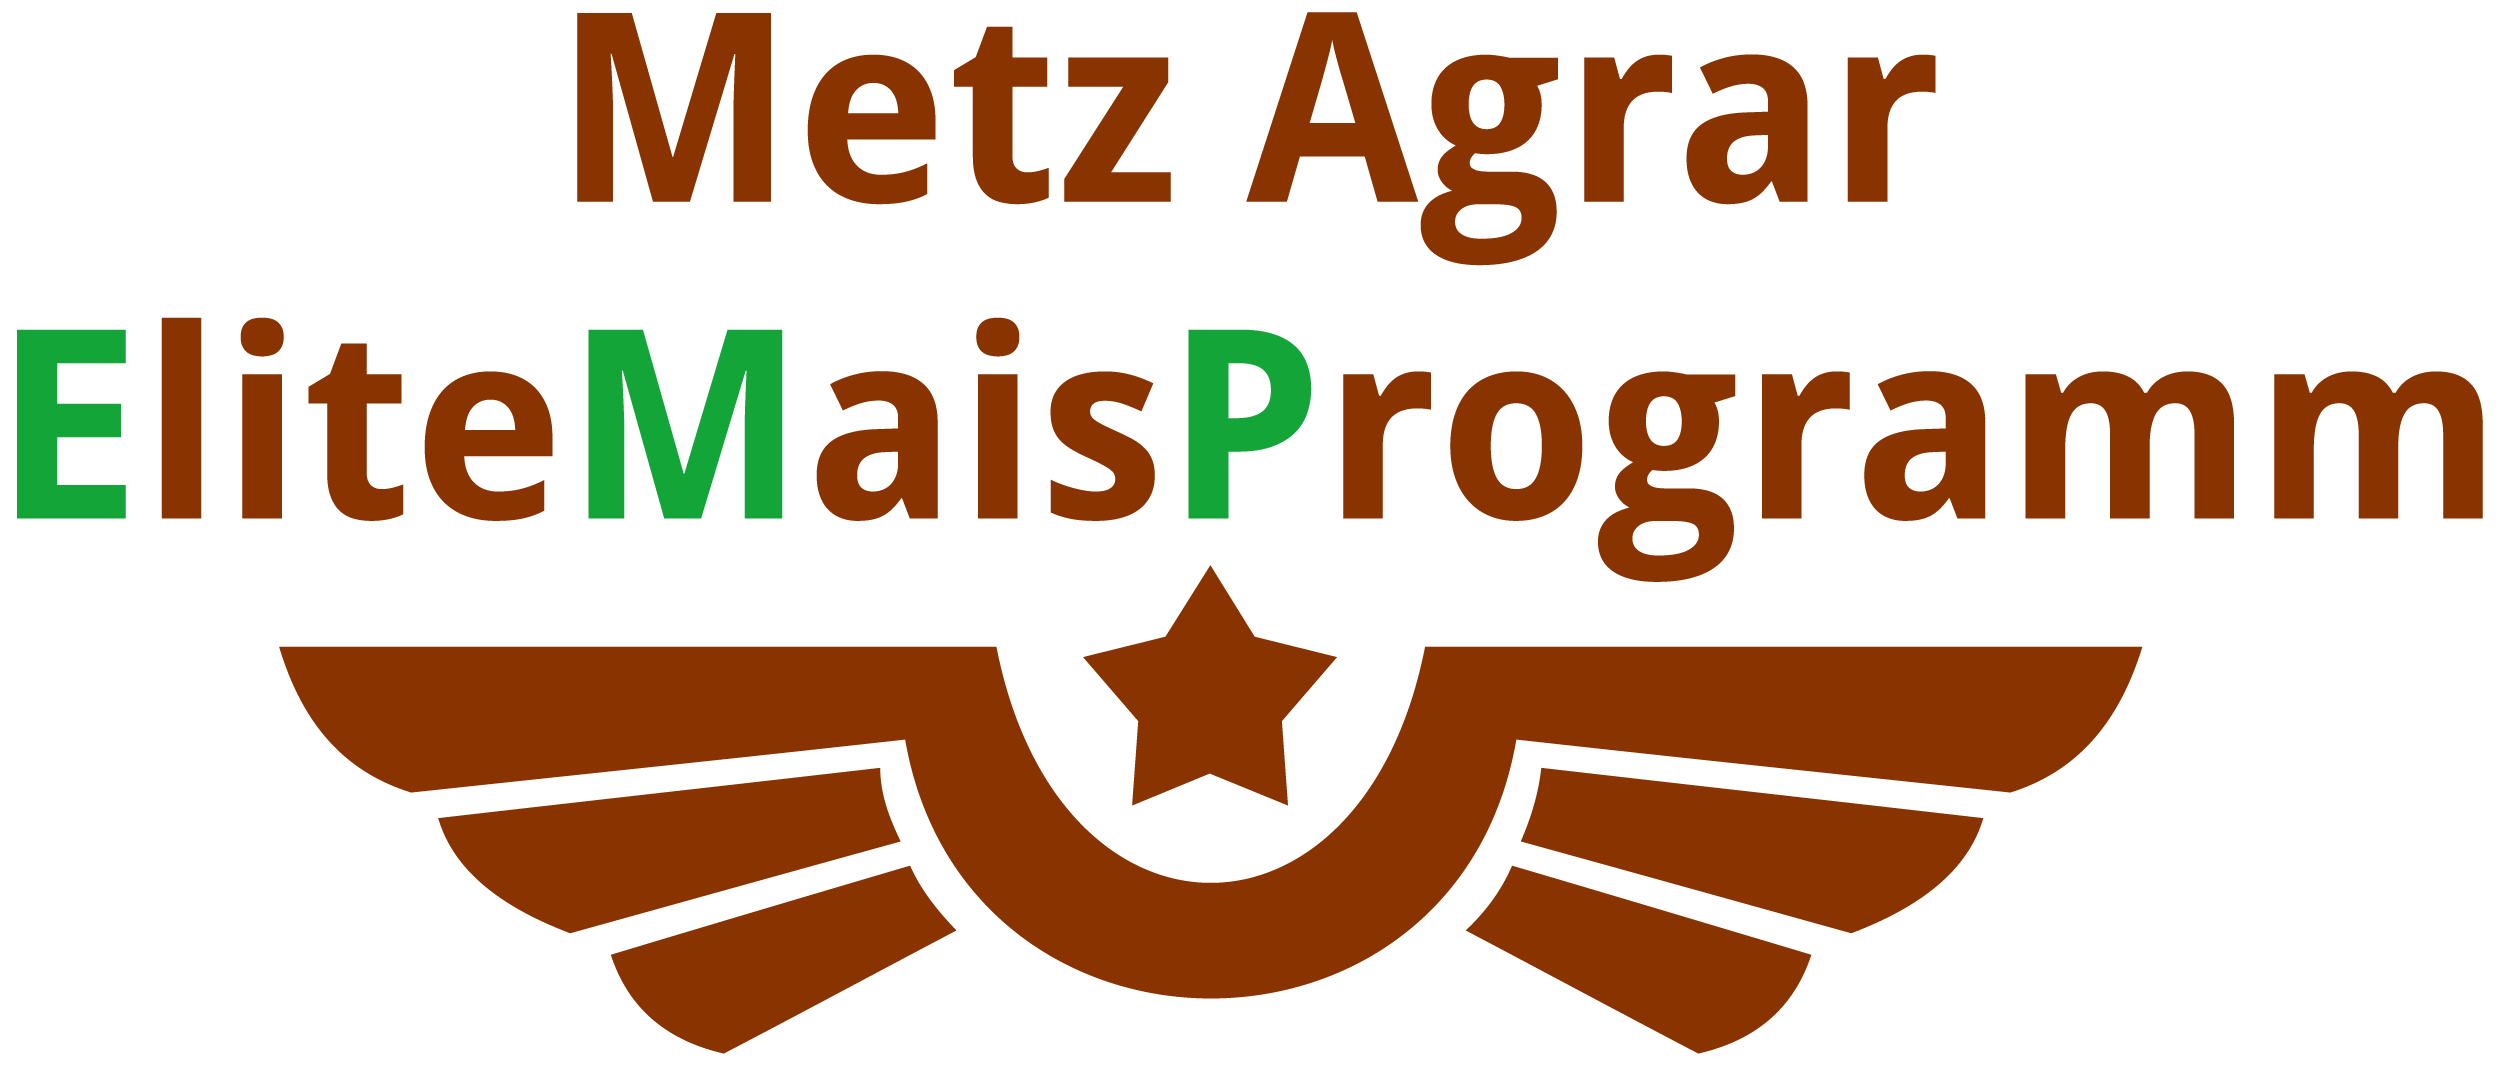 zur Website des Metz Agrar Center